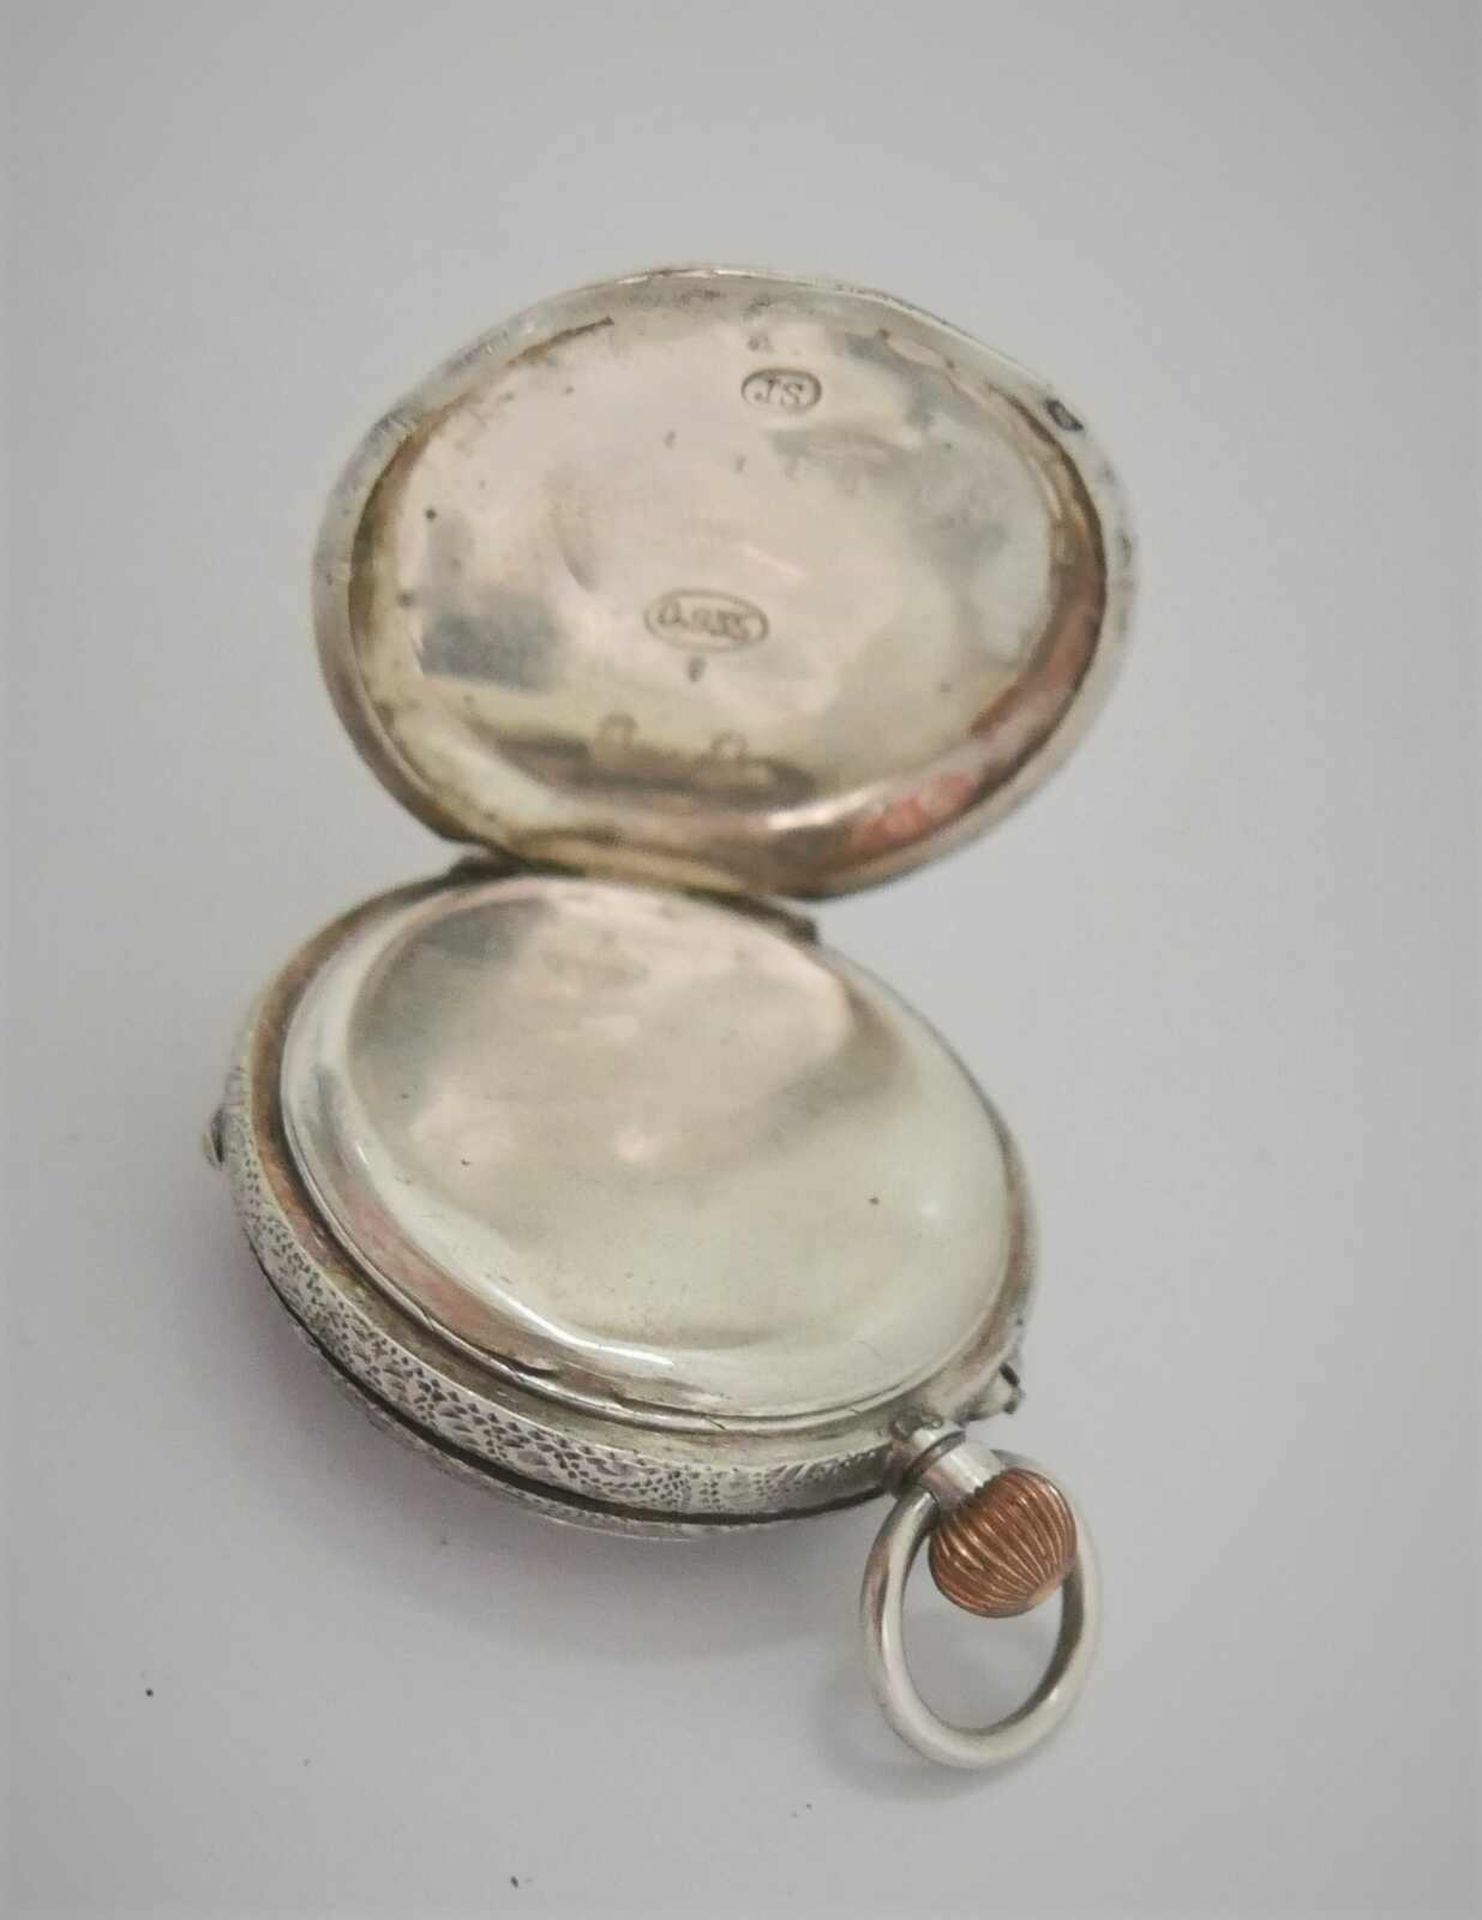 Damen Taschenuhr 935er Silber. Funktion nicht geprüft - Bild 3 aus 3